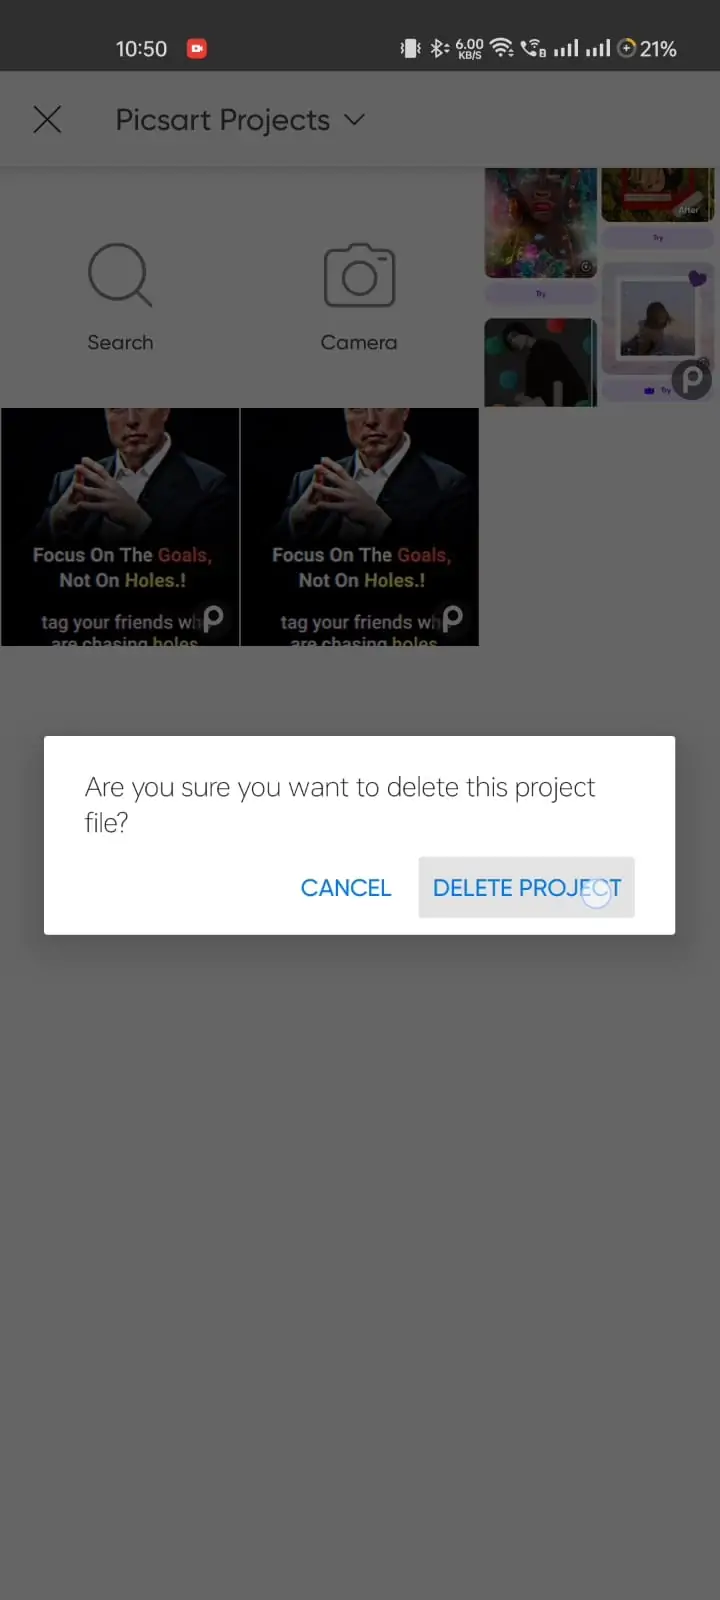 click to delete picsart project